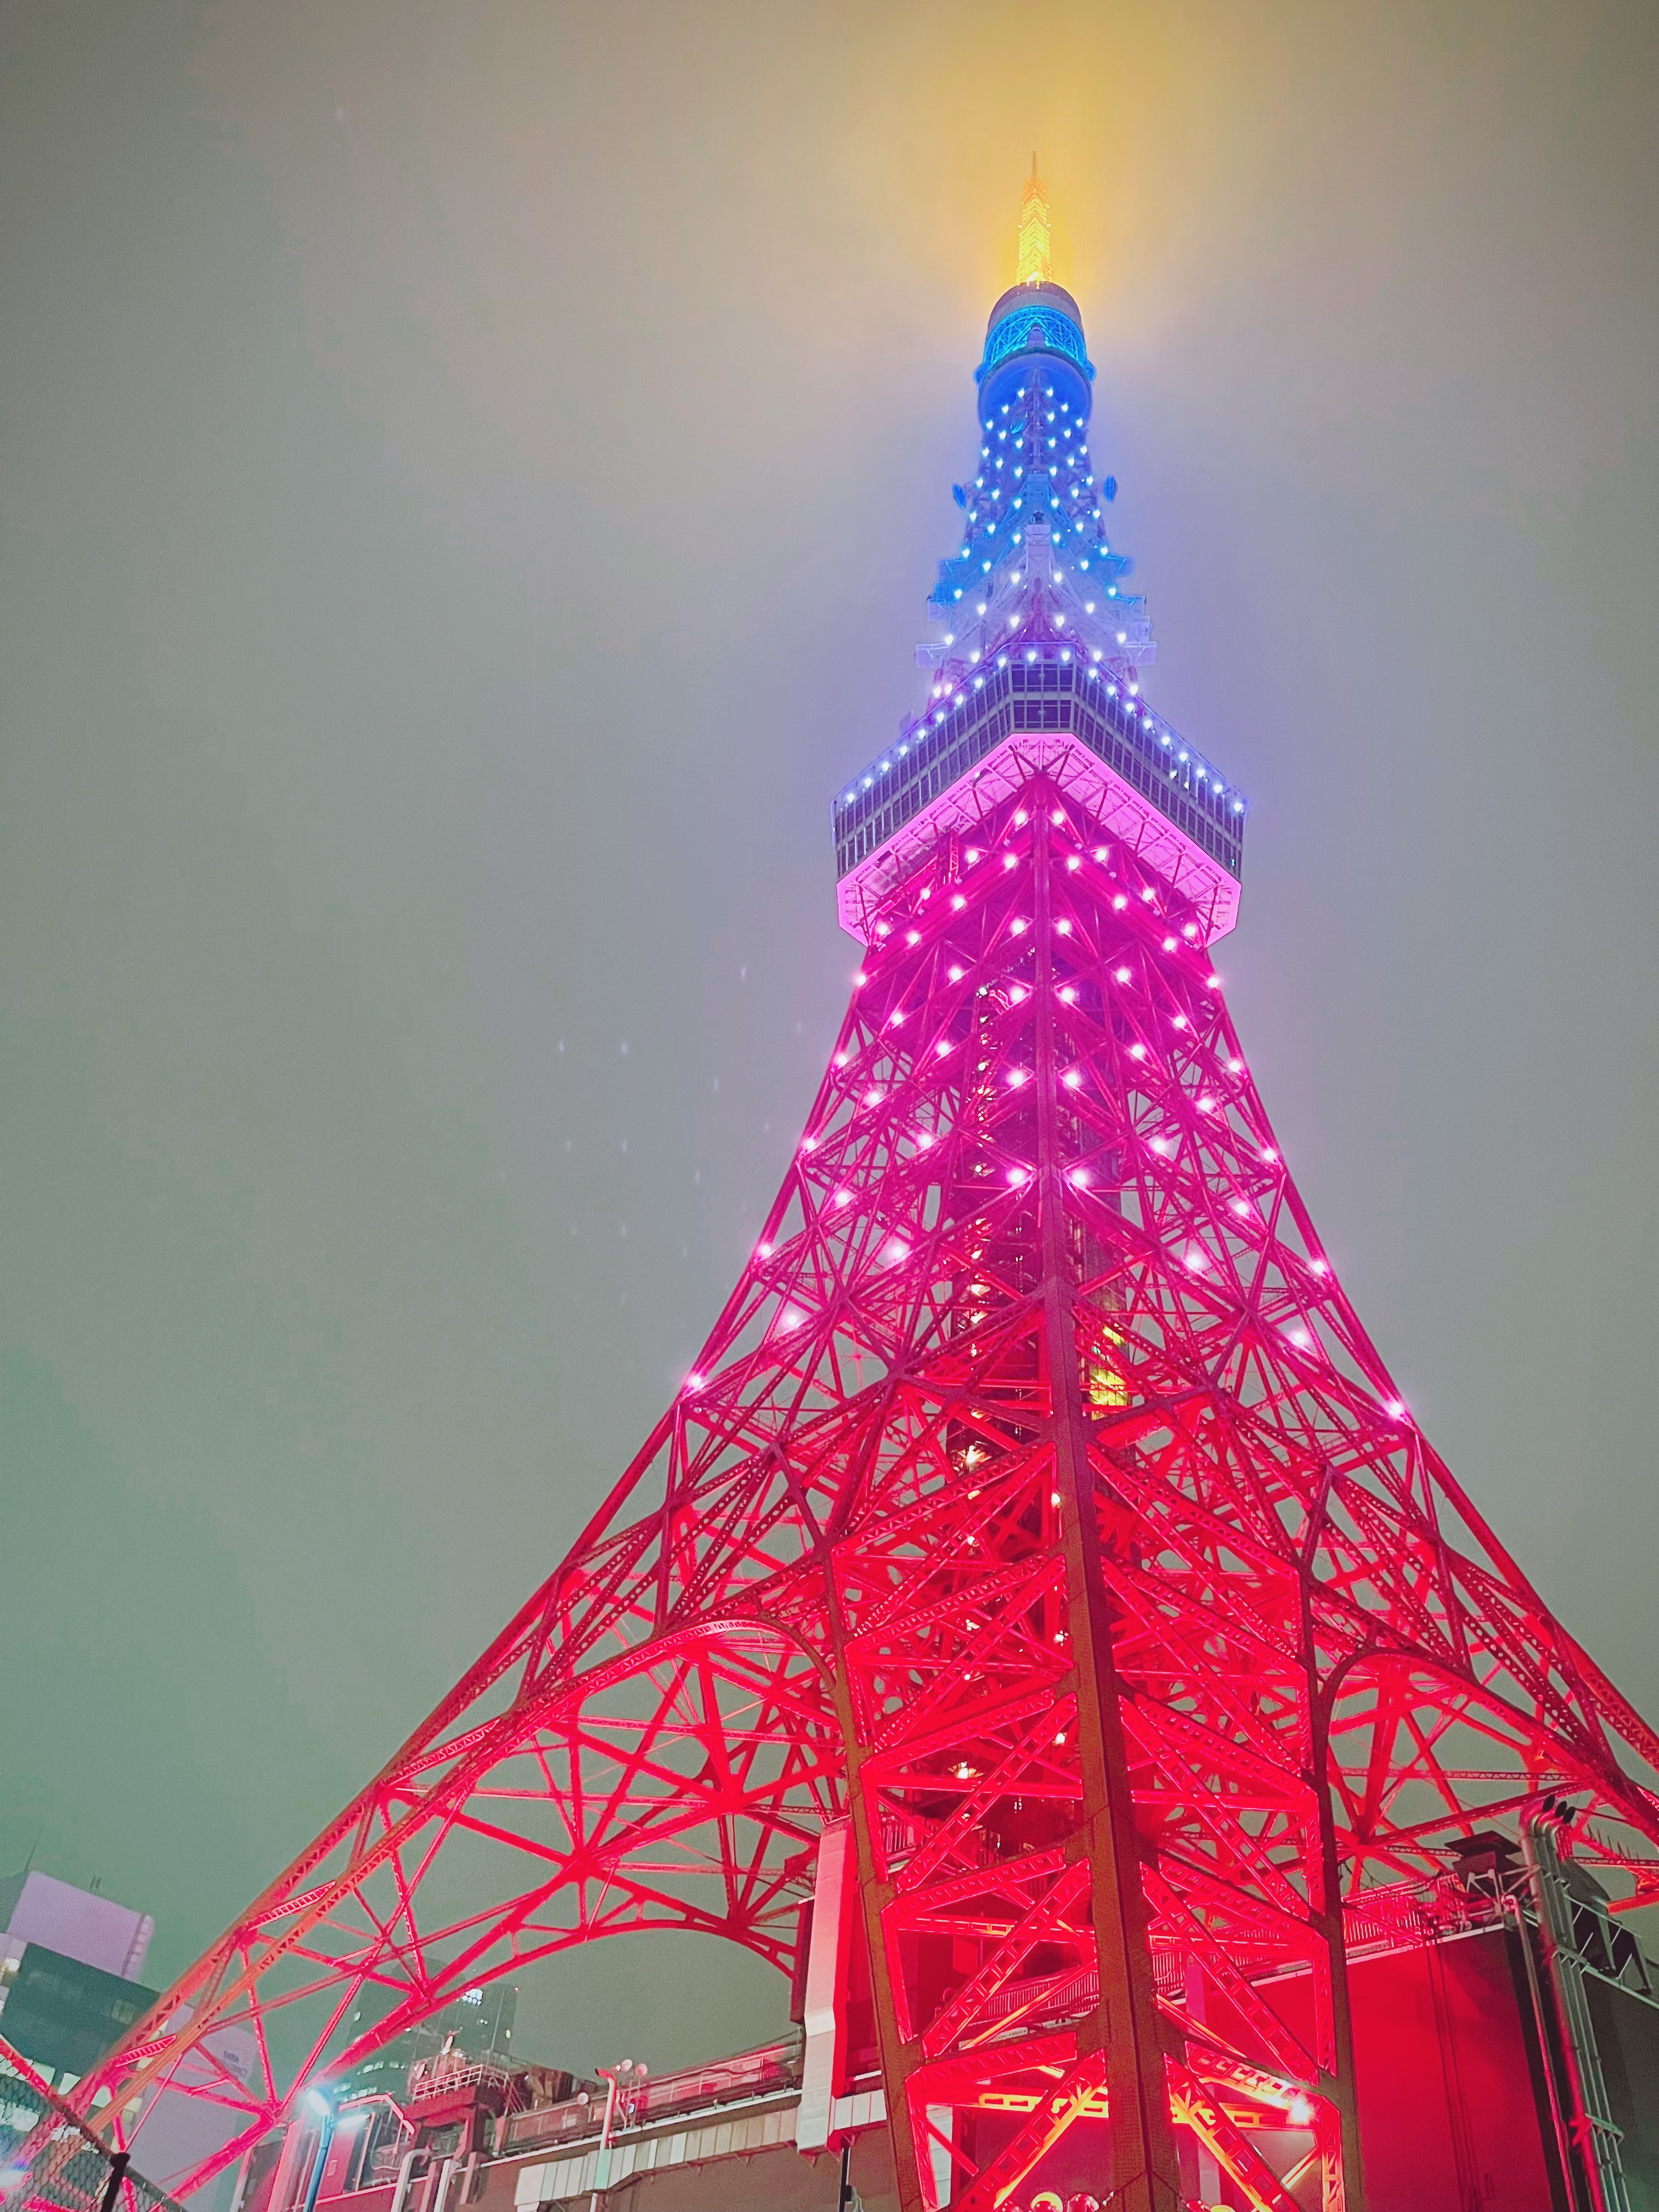 キキ ララ 公式 今夜の東京タワーは キキ Amp カラーにライトアップよ 雨でちょっぴり曇り空だけれど 19時30分に無事点灯したの 良かったらみんなにも見てもらえるとうれしいわ T Co Dgwa8ze9pn Twitter